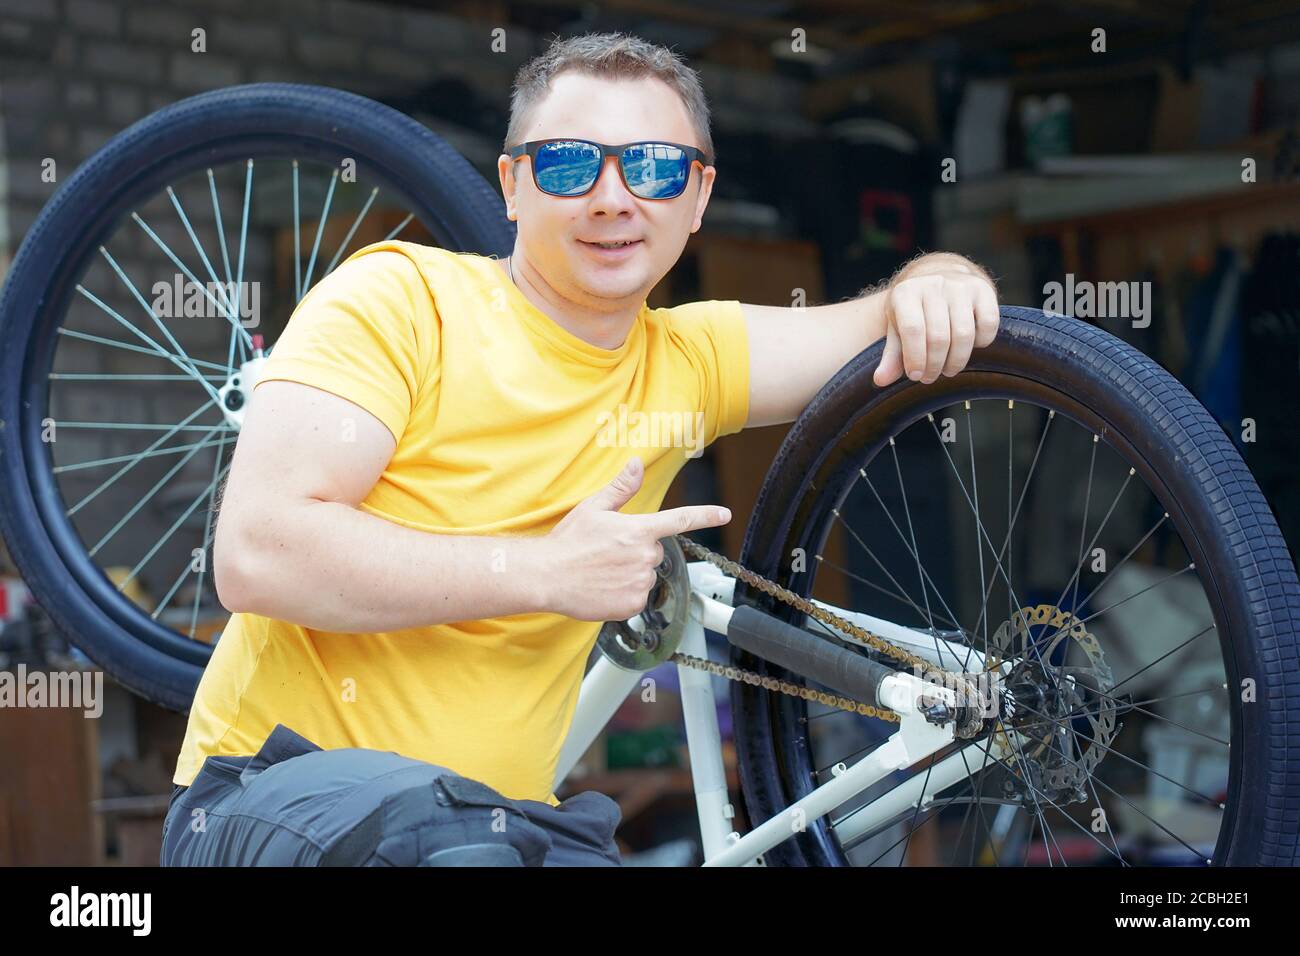 un gars avec des lunettes et un t-shirt jaune est assis avant d'une bicyclette sur le fond d'un atelier garage Banque D'Images